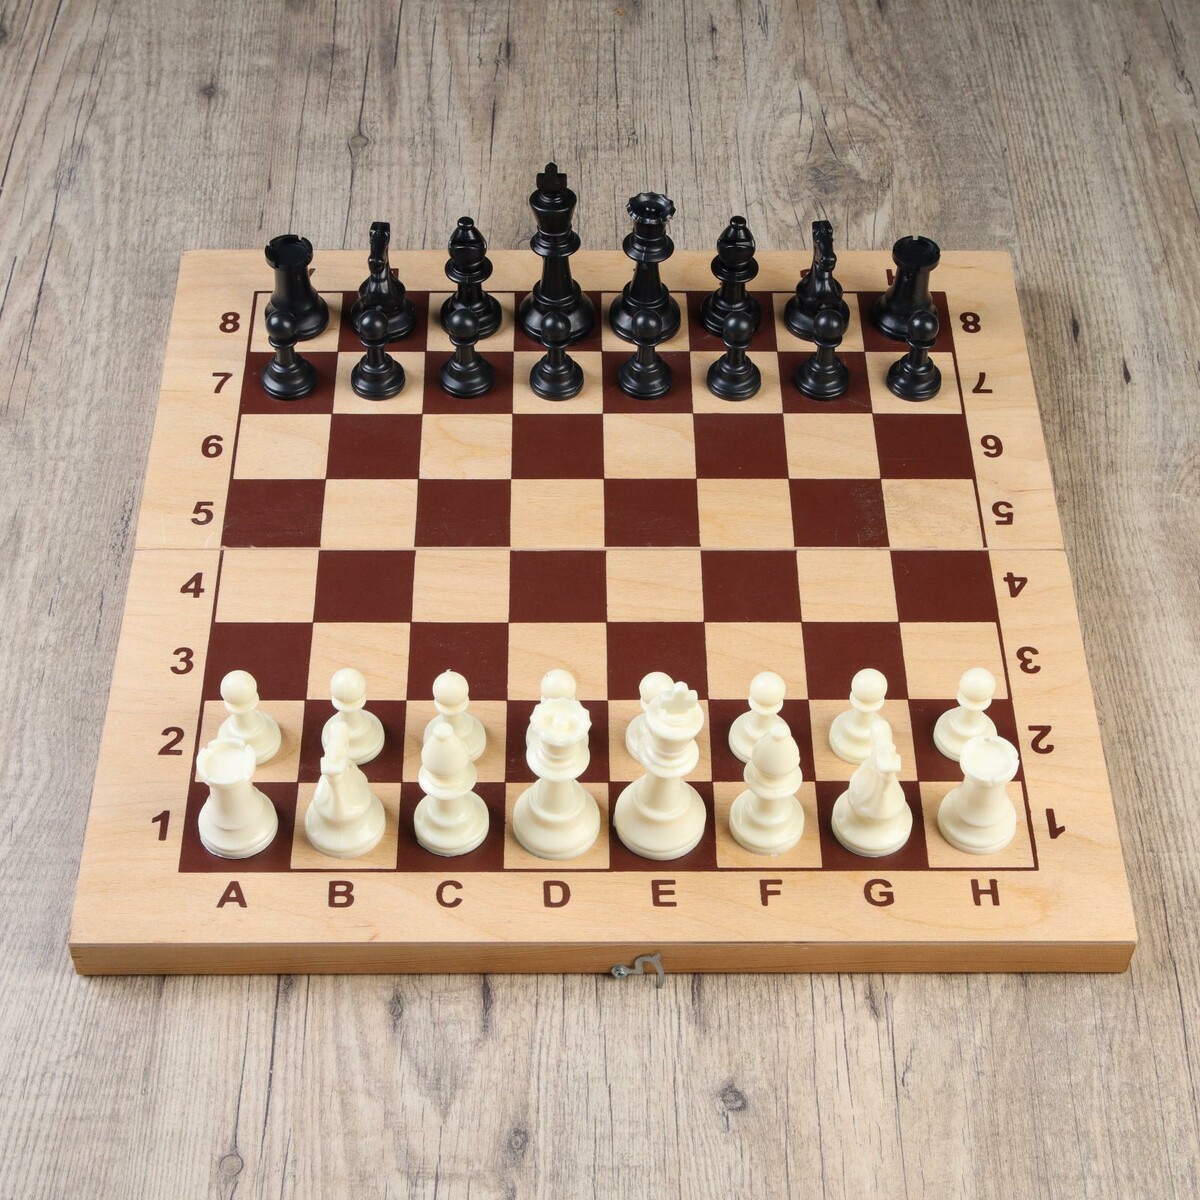 Шахматные фигуры, пластик, король h-9.5 см, пешка h-4.5 см король крыс